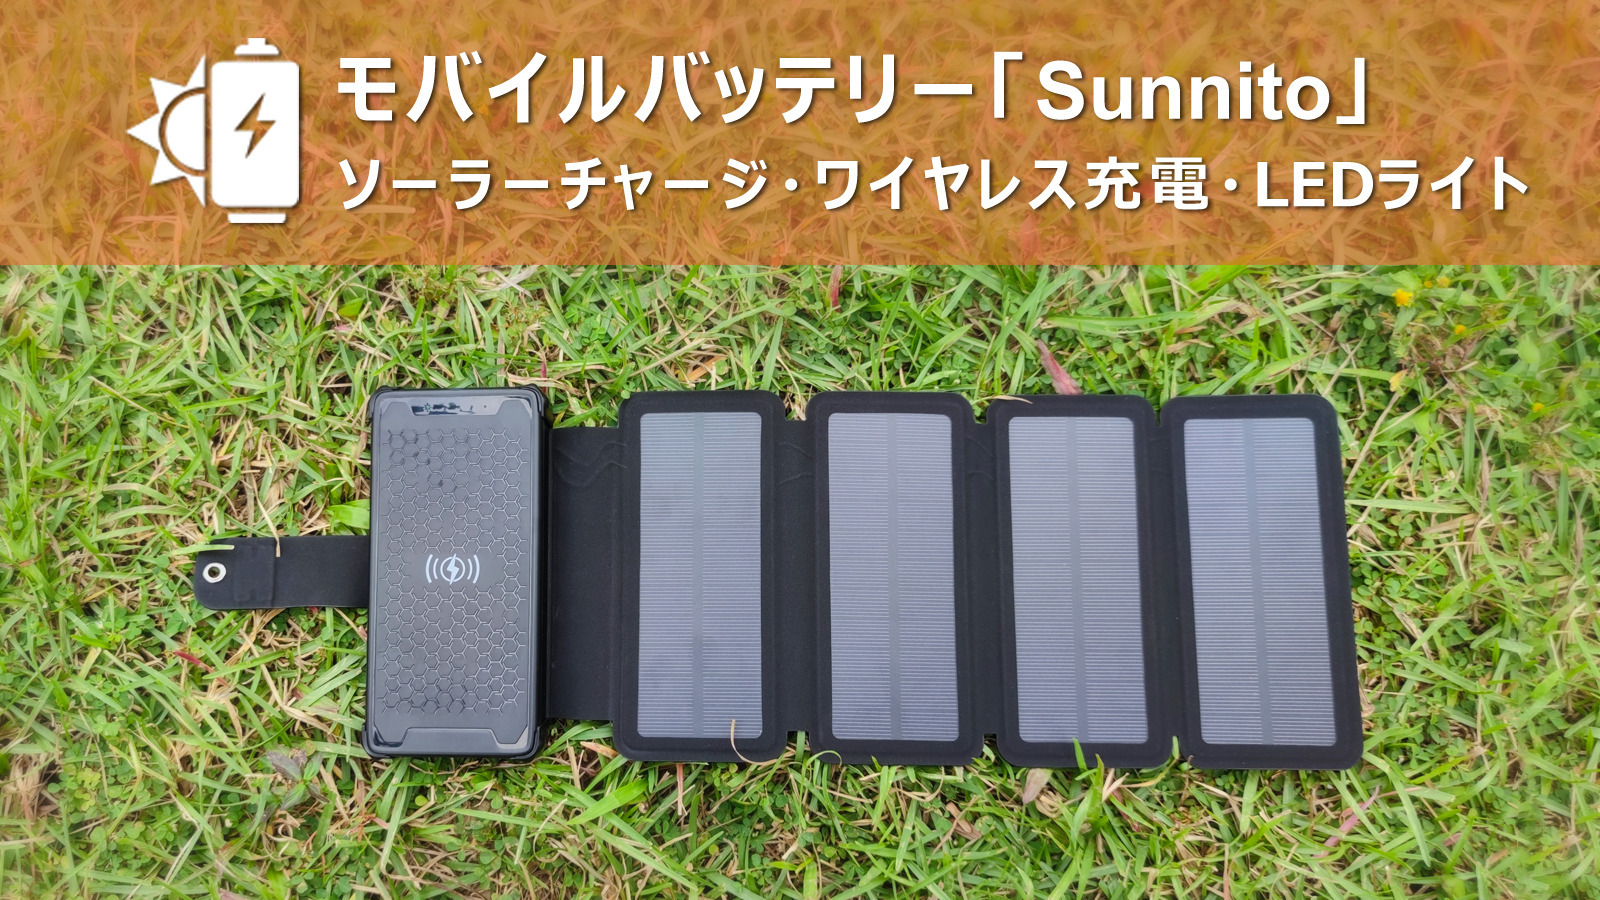 ソーラーモバイルバッテリー「Sunnito」